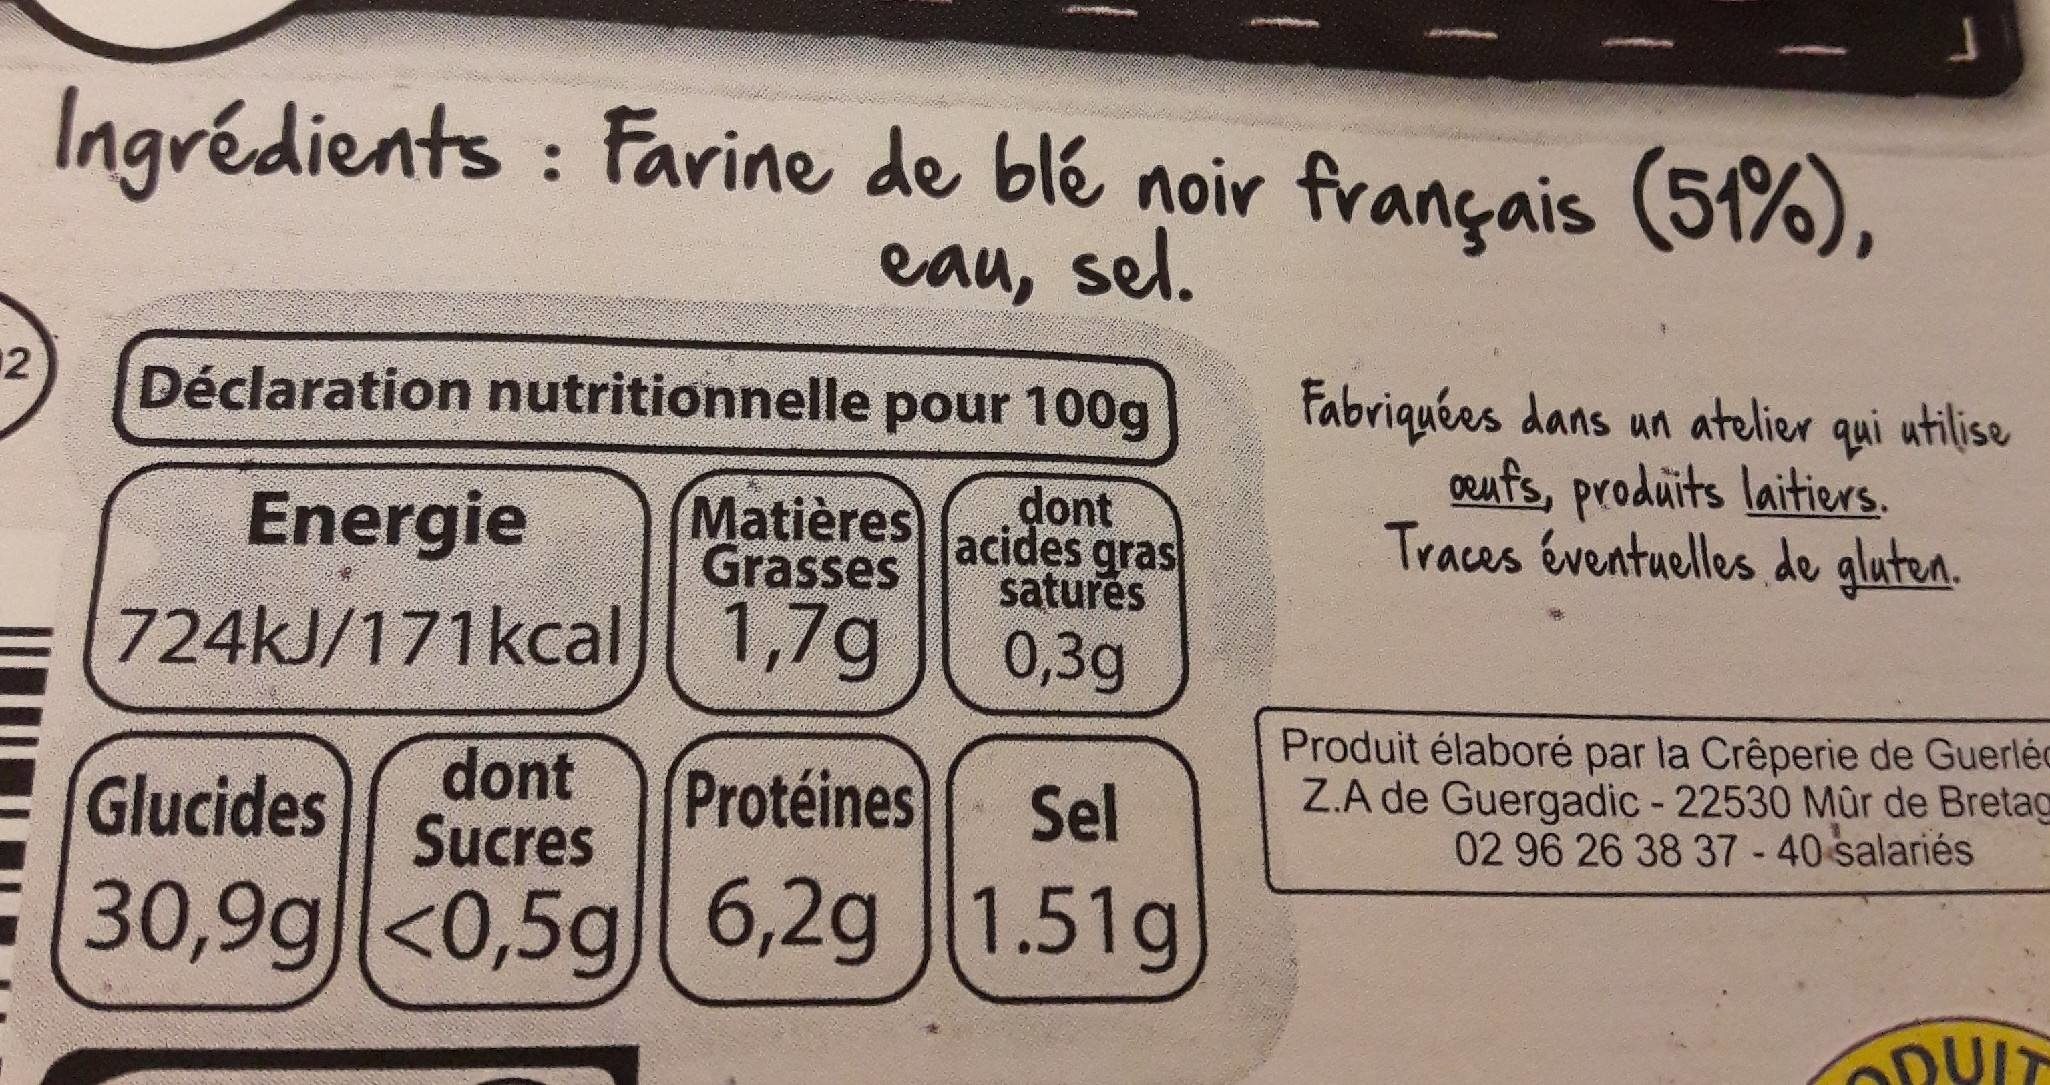 6 Galettes fraîches de blé noir - Nutrition facts - fr